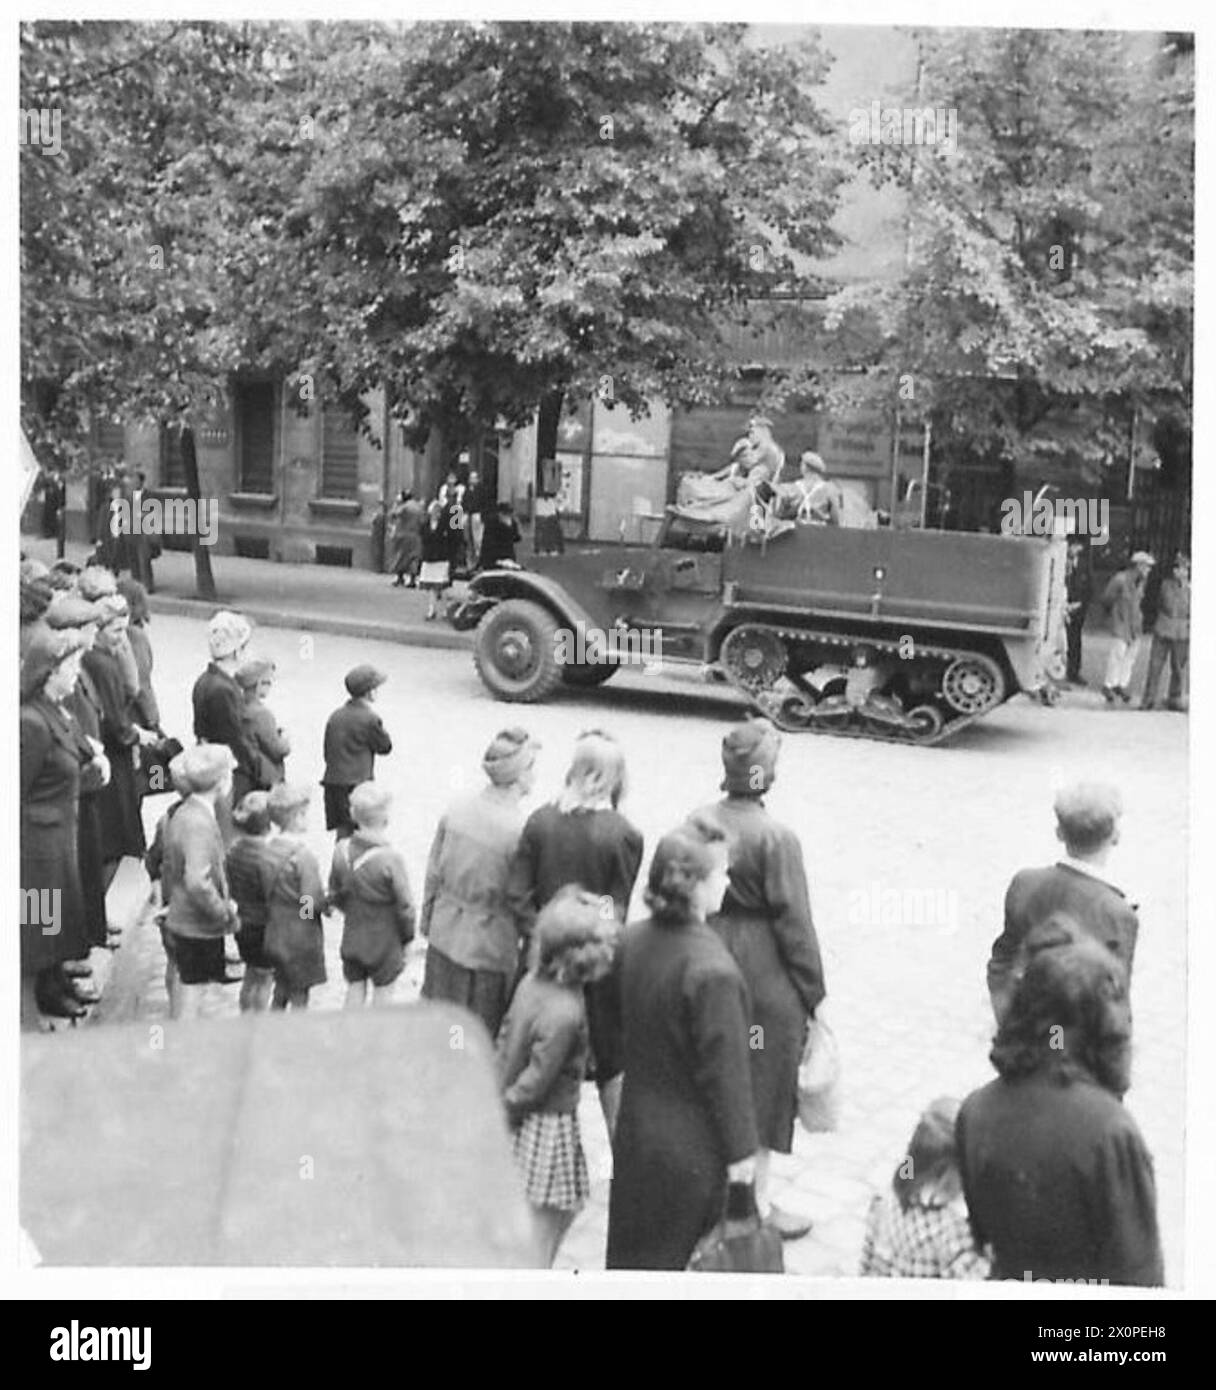 ENTRÉE BRITANNIQUE À BERLIN - les Berlinois regardent un véhicule demi-piste entrer dans Berlin. Négatif photographique, Armée britannique, 21e groupe d'armées Banque D'Images